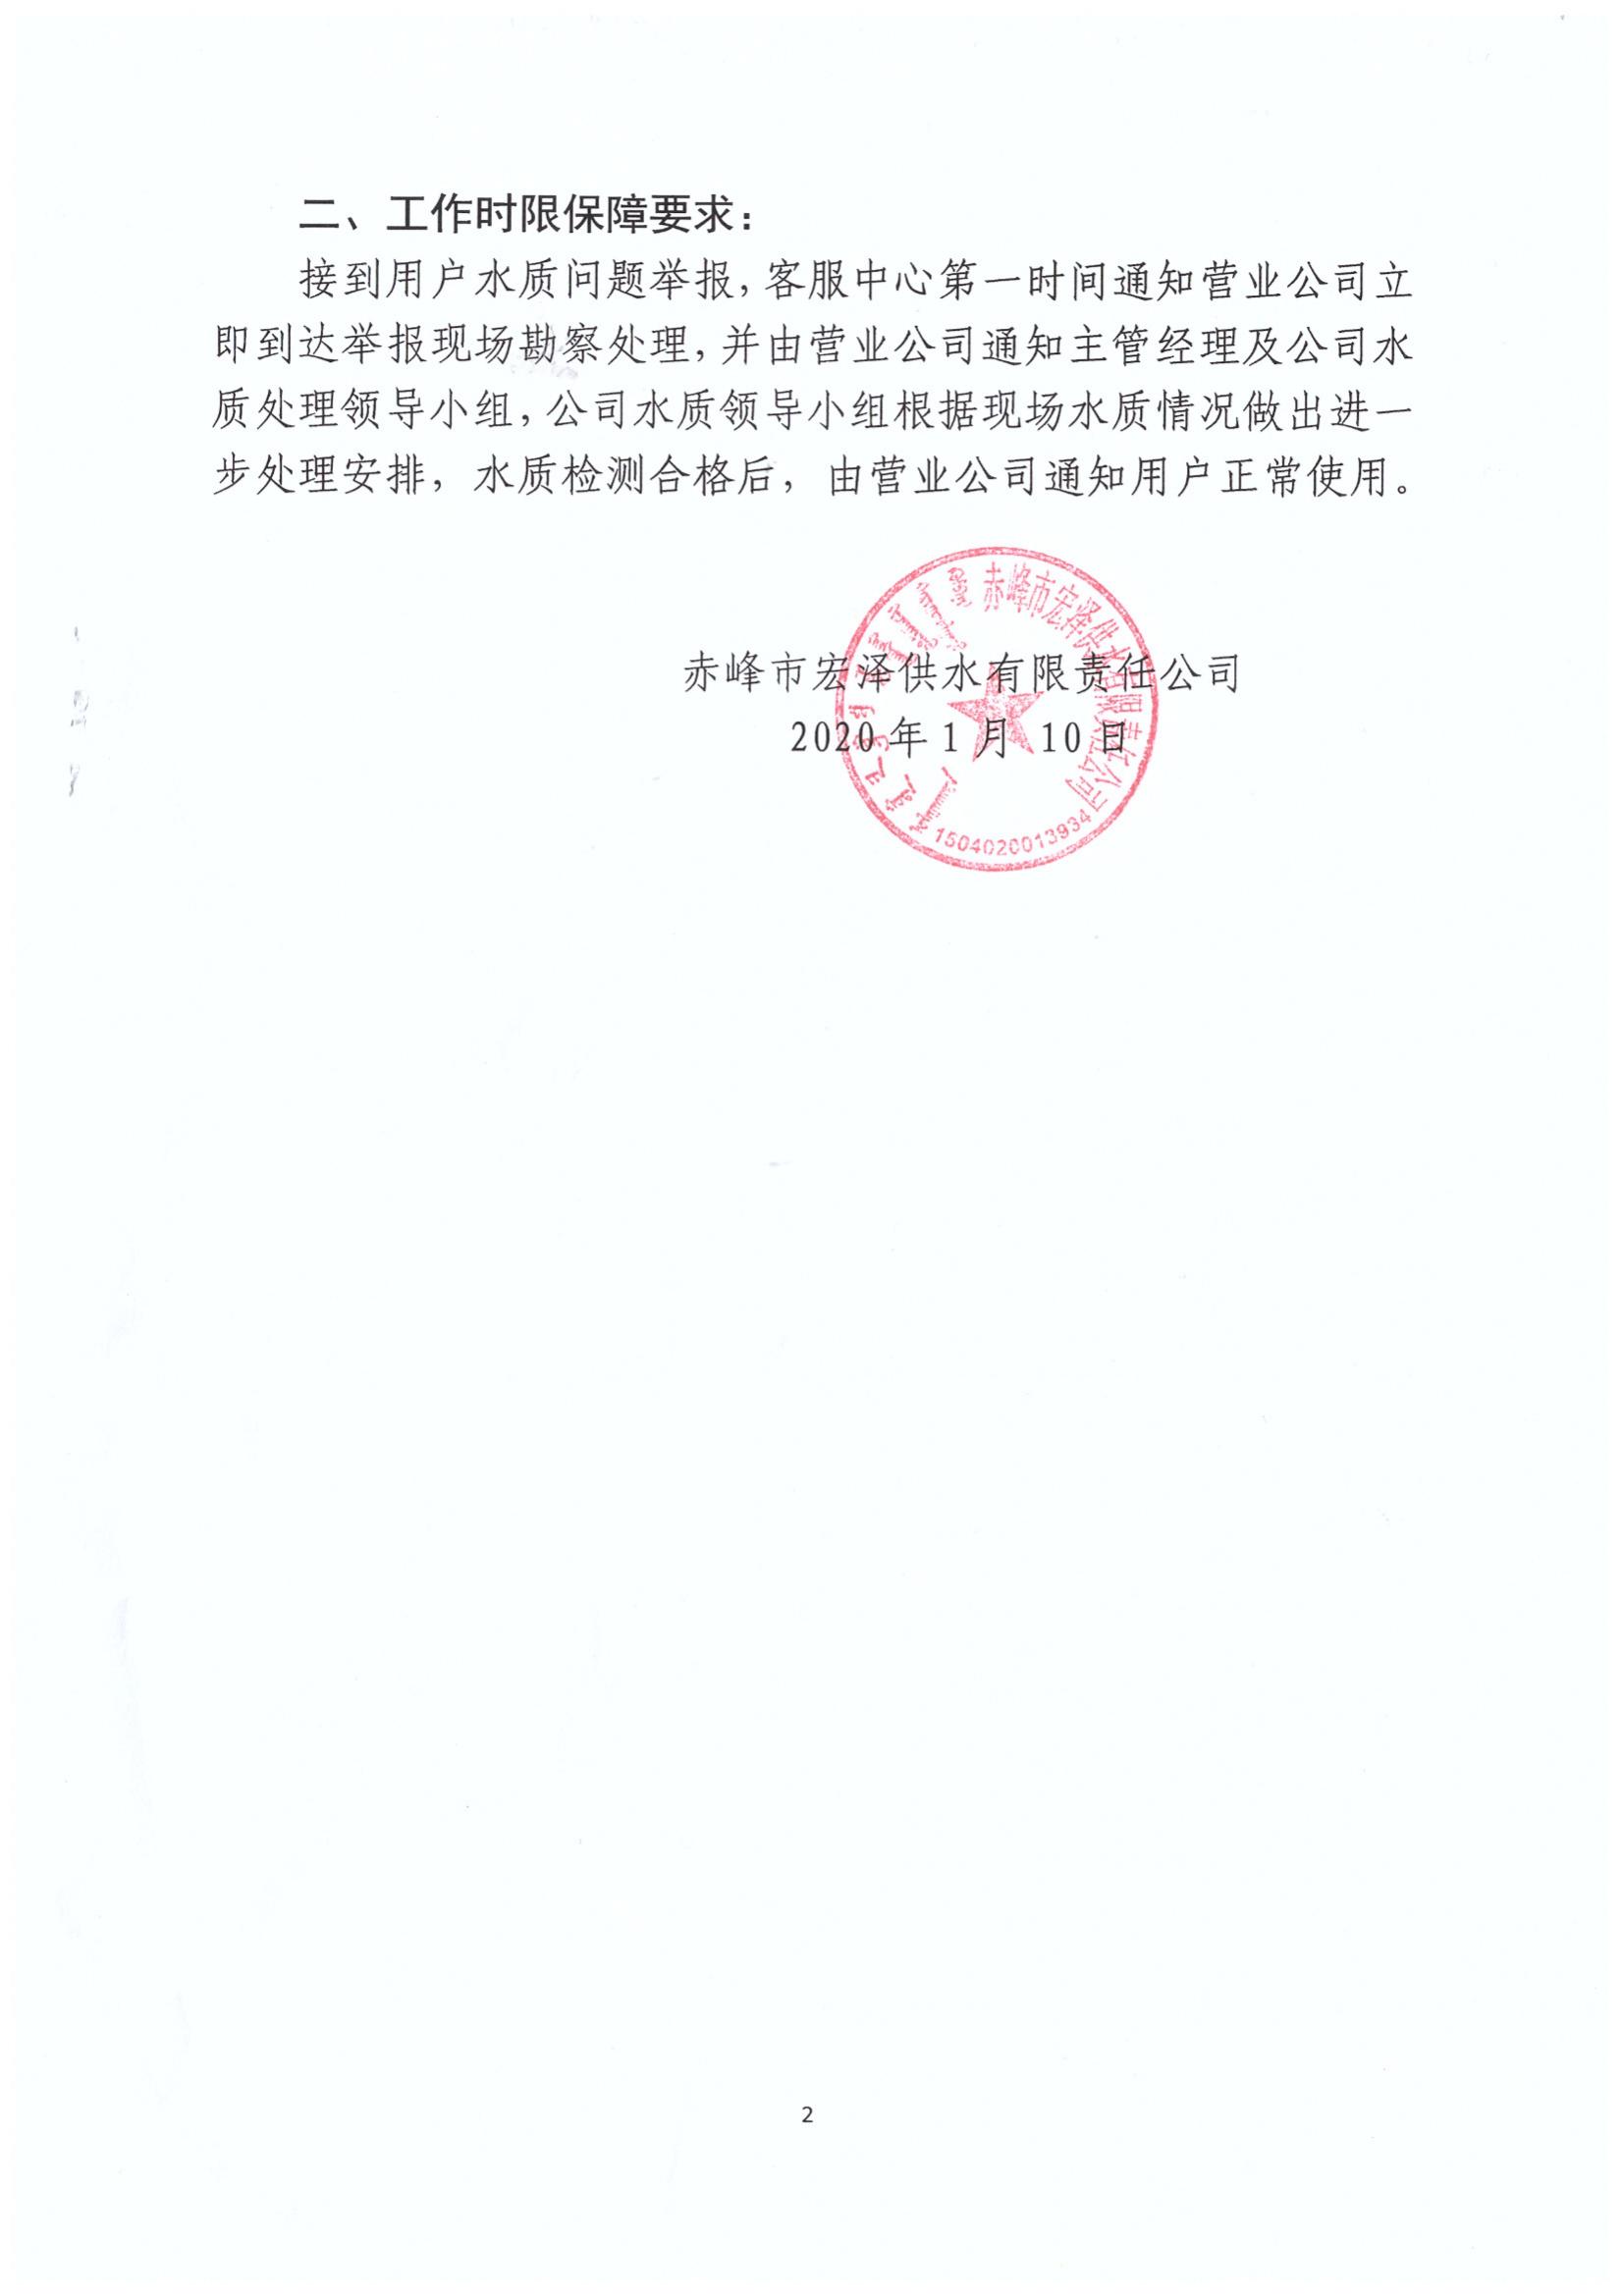 赤峰市宏泽供水有限责任公司水质事故处理表工作流程_01.jpg